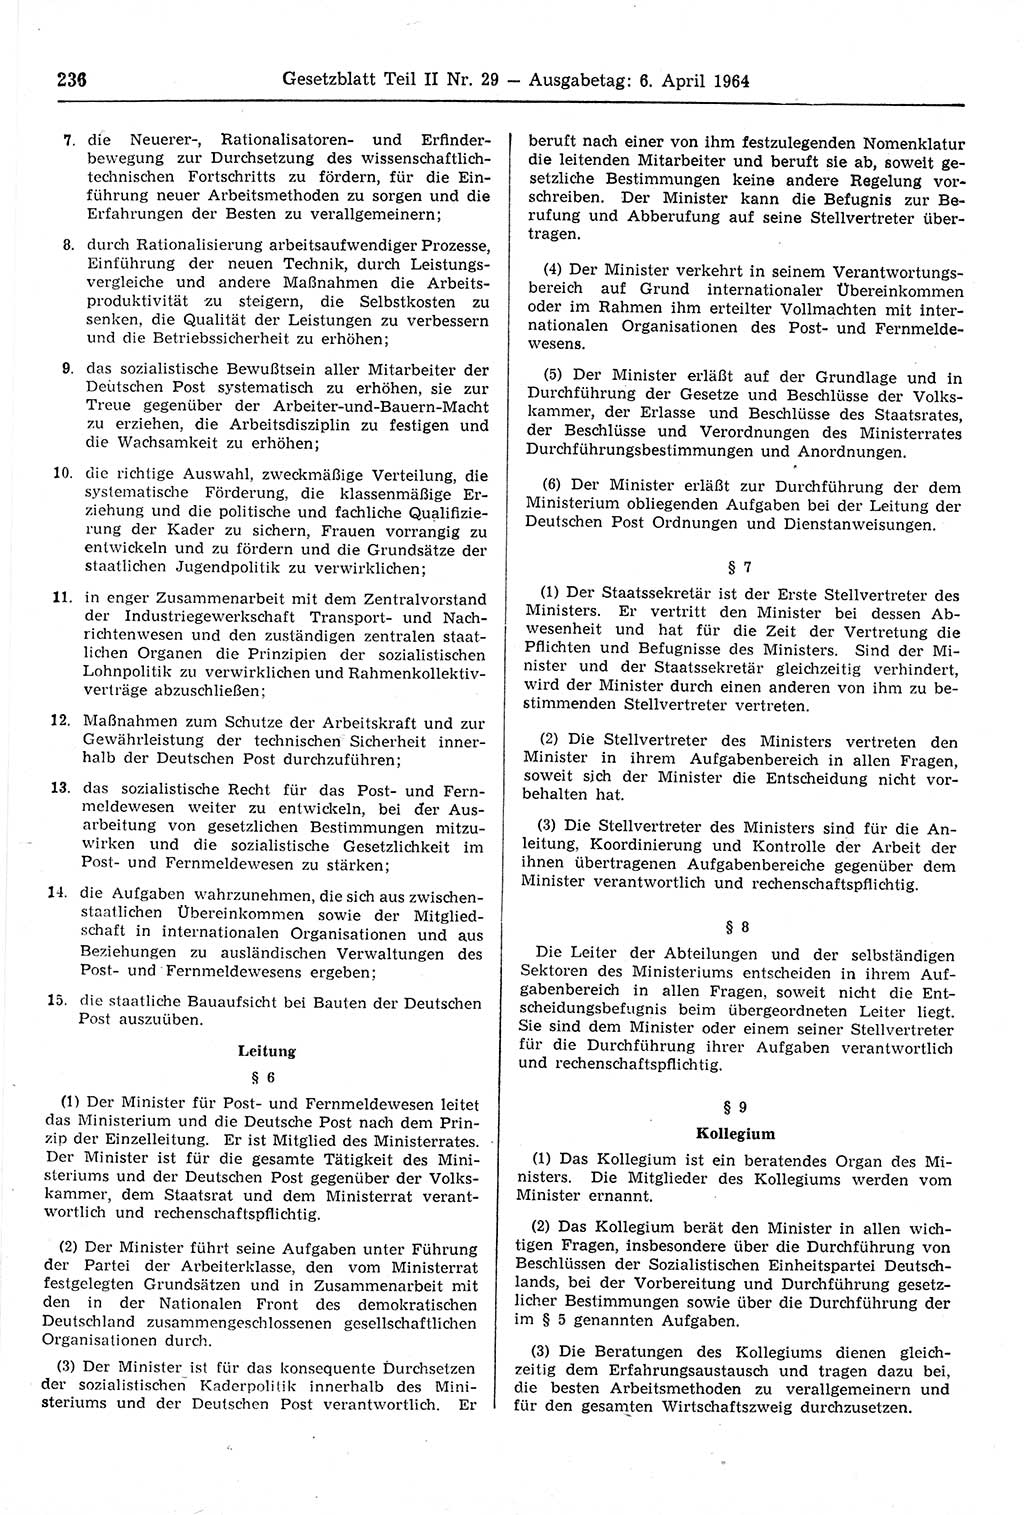 Gesetzblatt (GBl.) der Deutschen Demokratischen Republik (DDR) Teil ⅠⅠ 1964, Seite 236 (GBl. DDR ⅠⅠ 1964, S. 236)